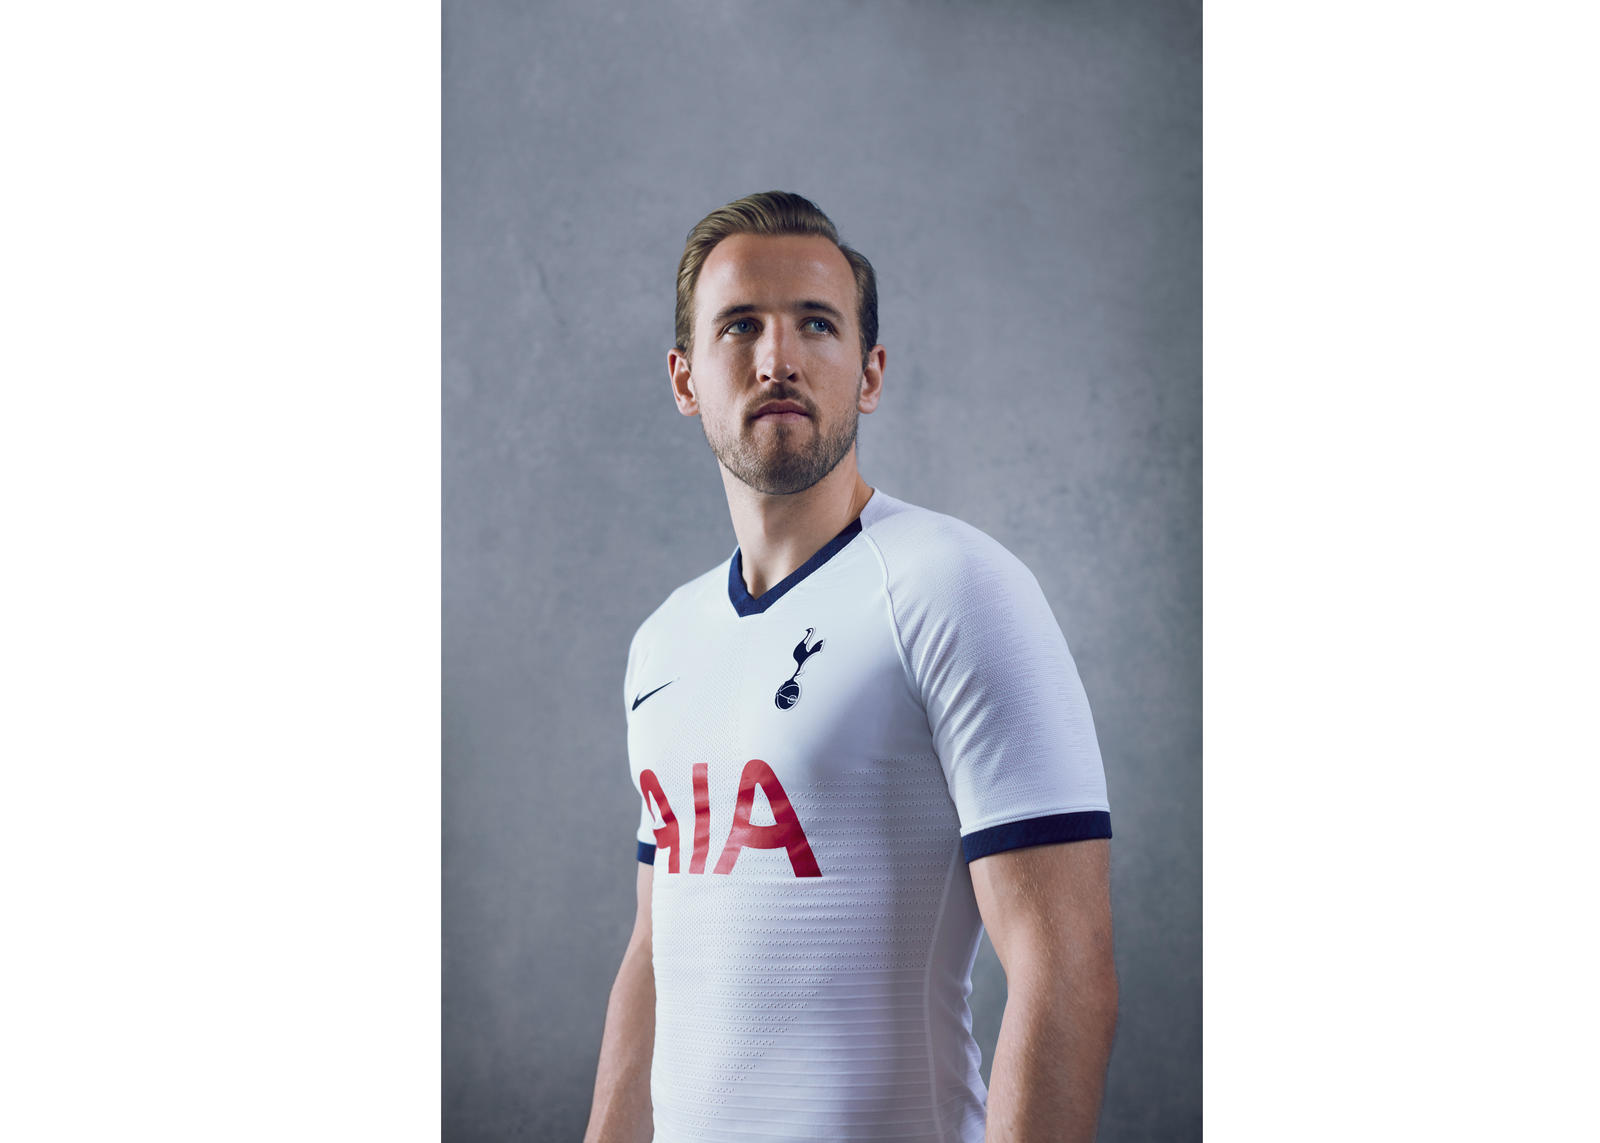 Tottenham Kit Leak: Images of New Away Shirt for 2019/2020 Season Shared  Online - Sports Illustrated